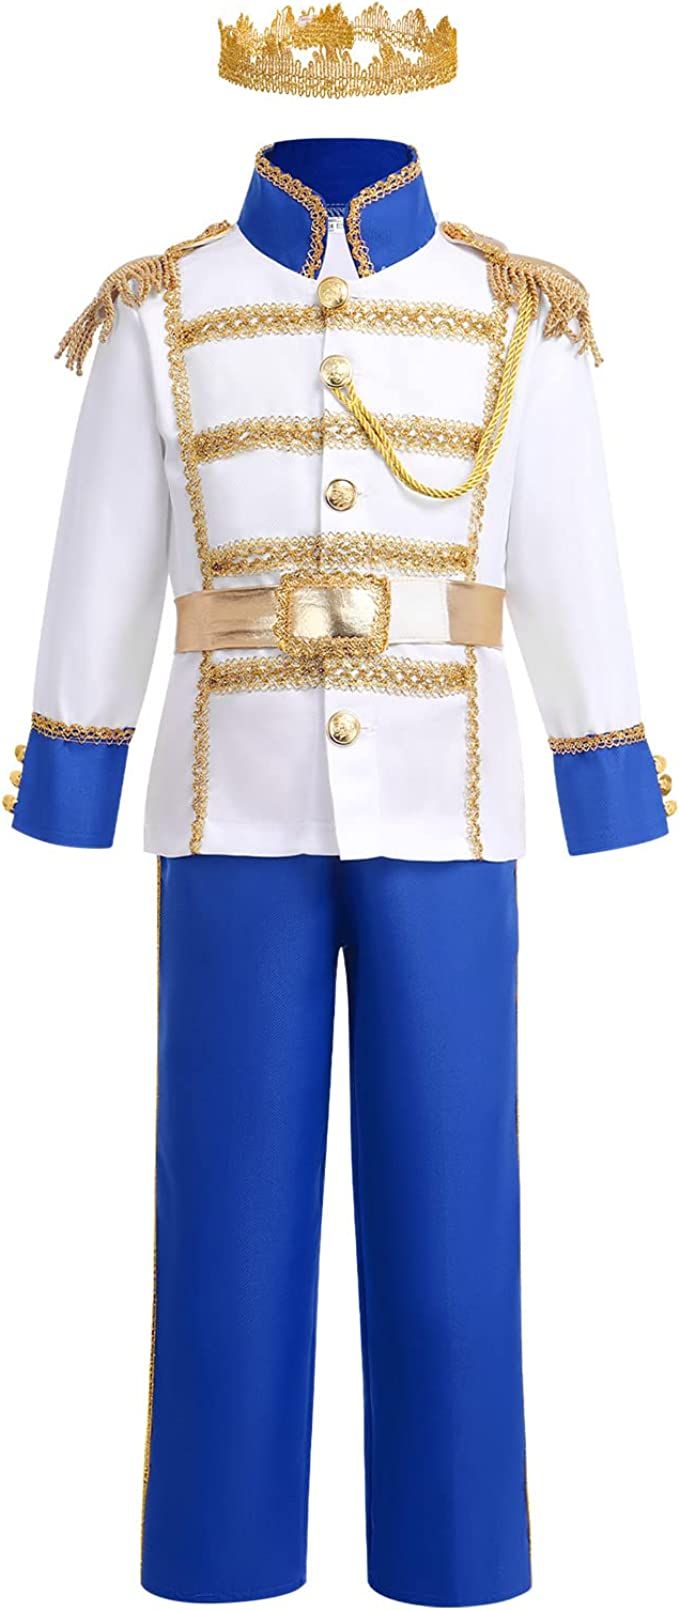 Boys Prince Charming Costume Kids Medieval Royal Prince Outfit Prince King Cosplay Dress up Hallo... | Amazon (US)